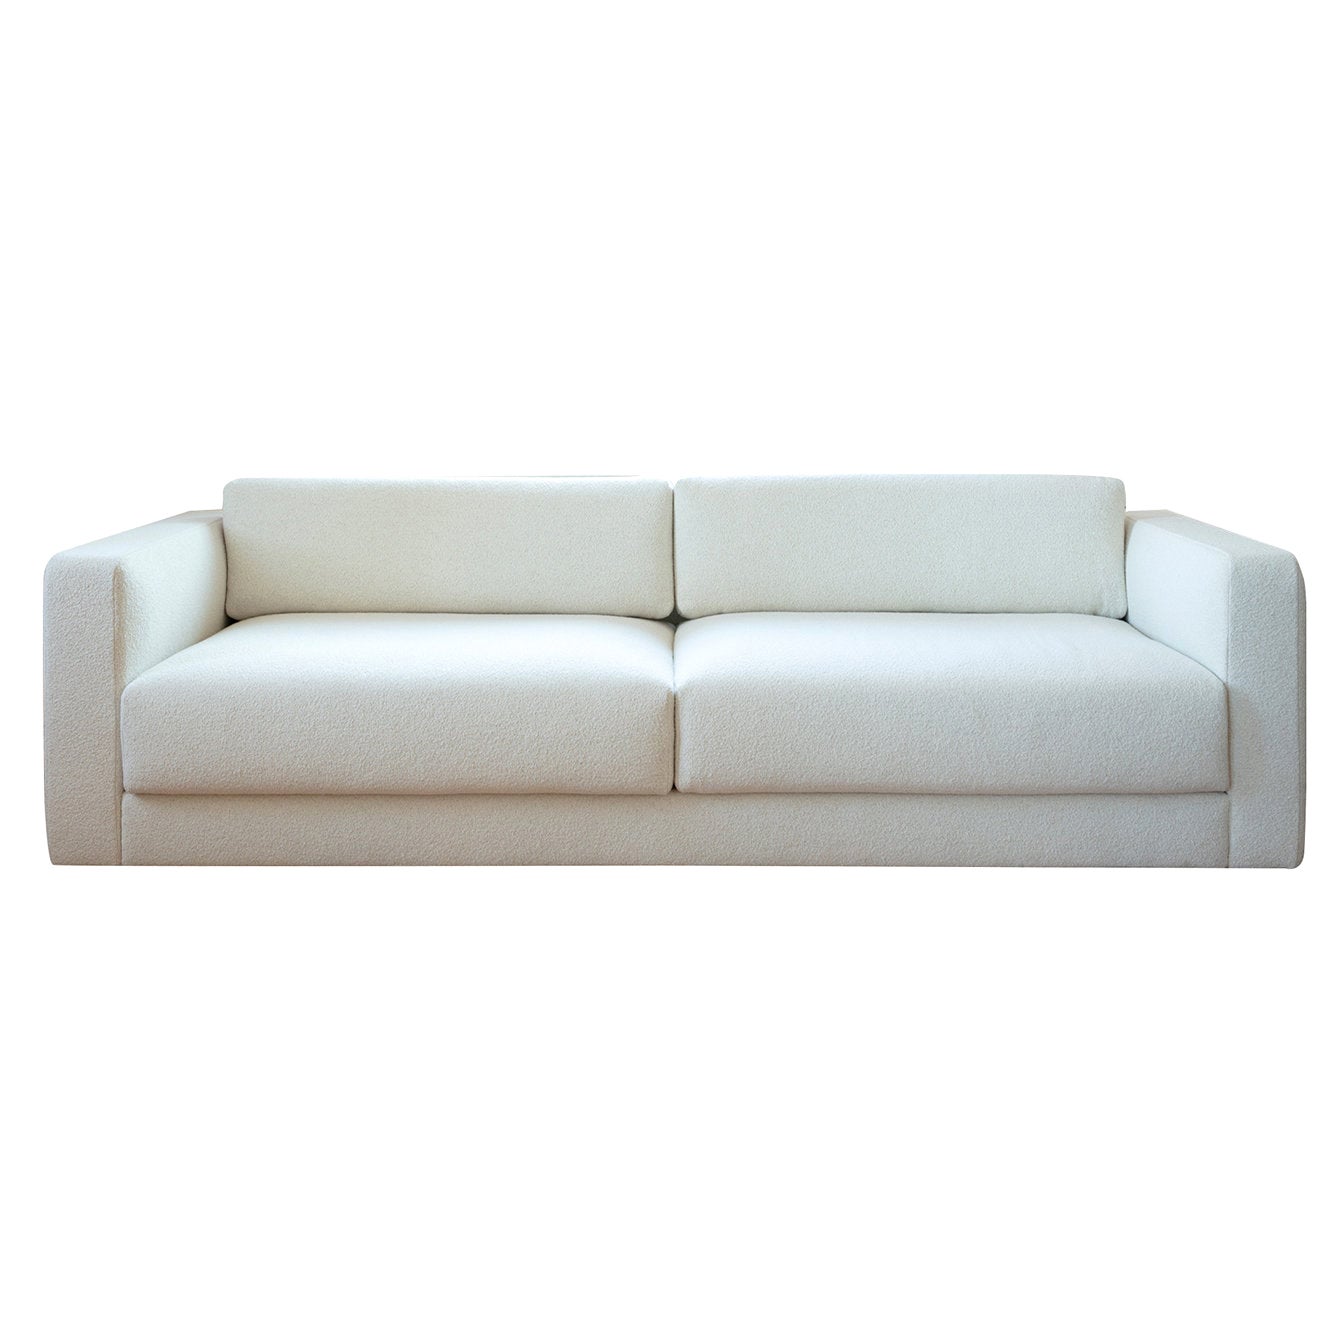 Daniel White Sofa For Sale